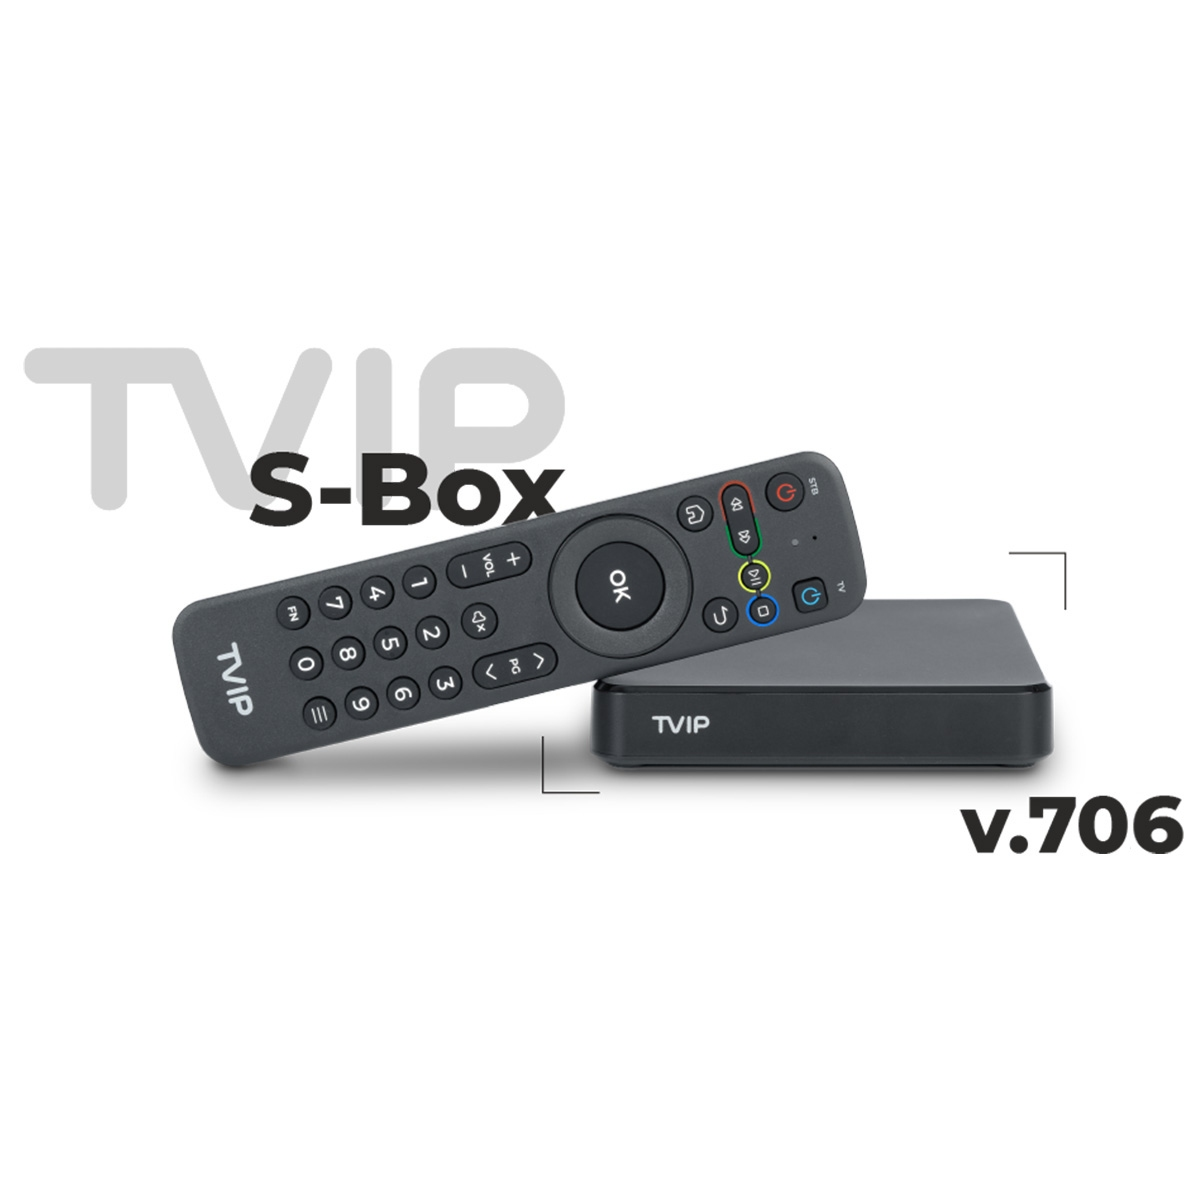 S-Box v.706 8 GB TVIP